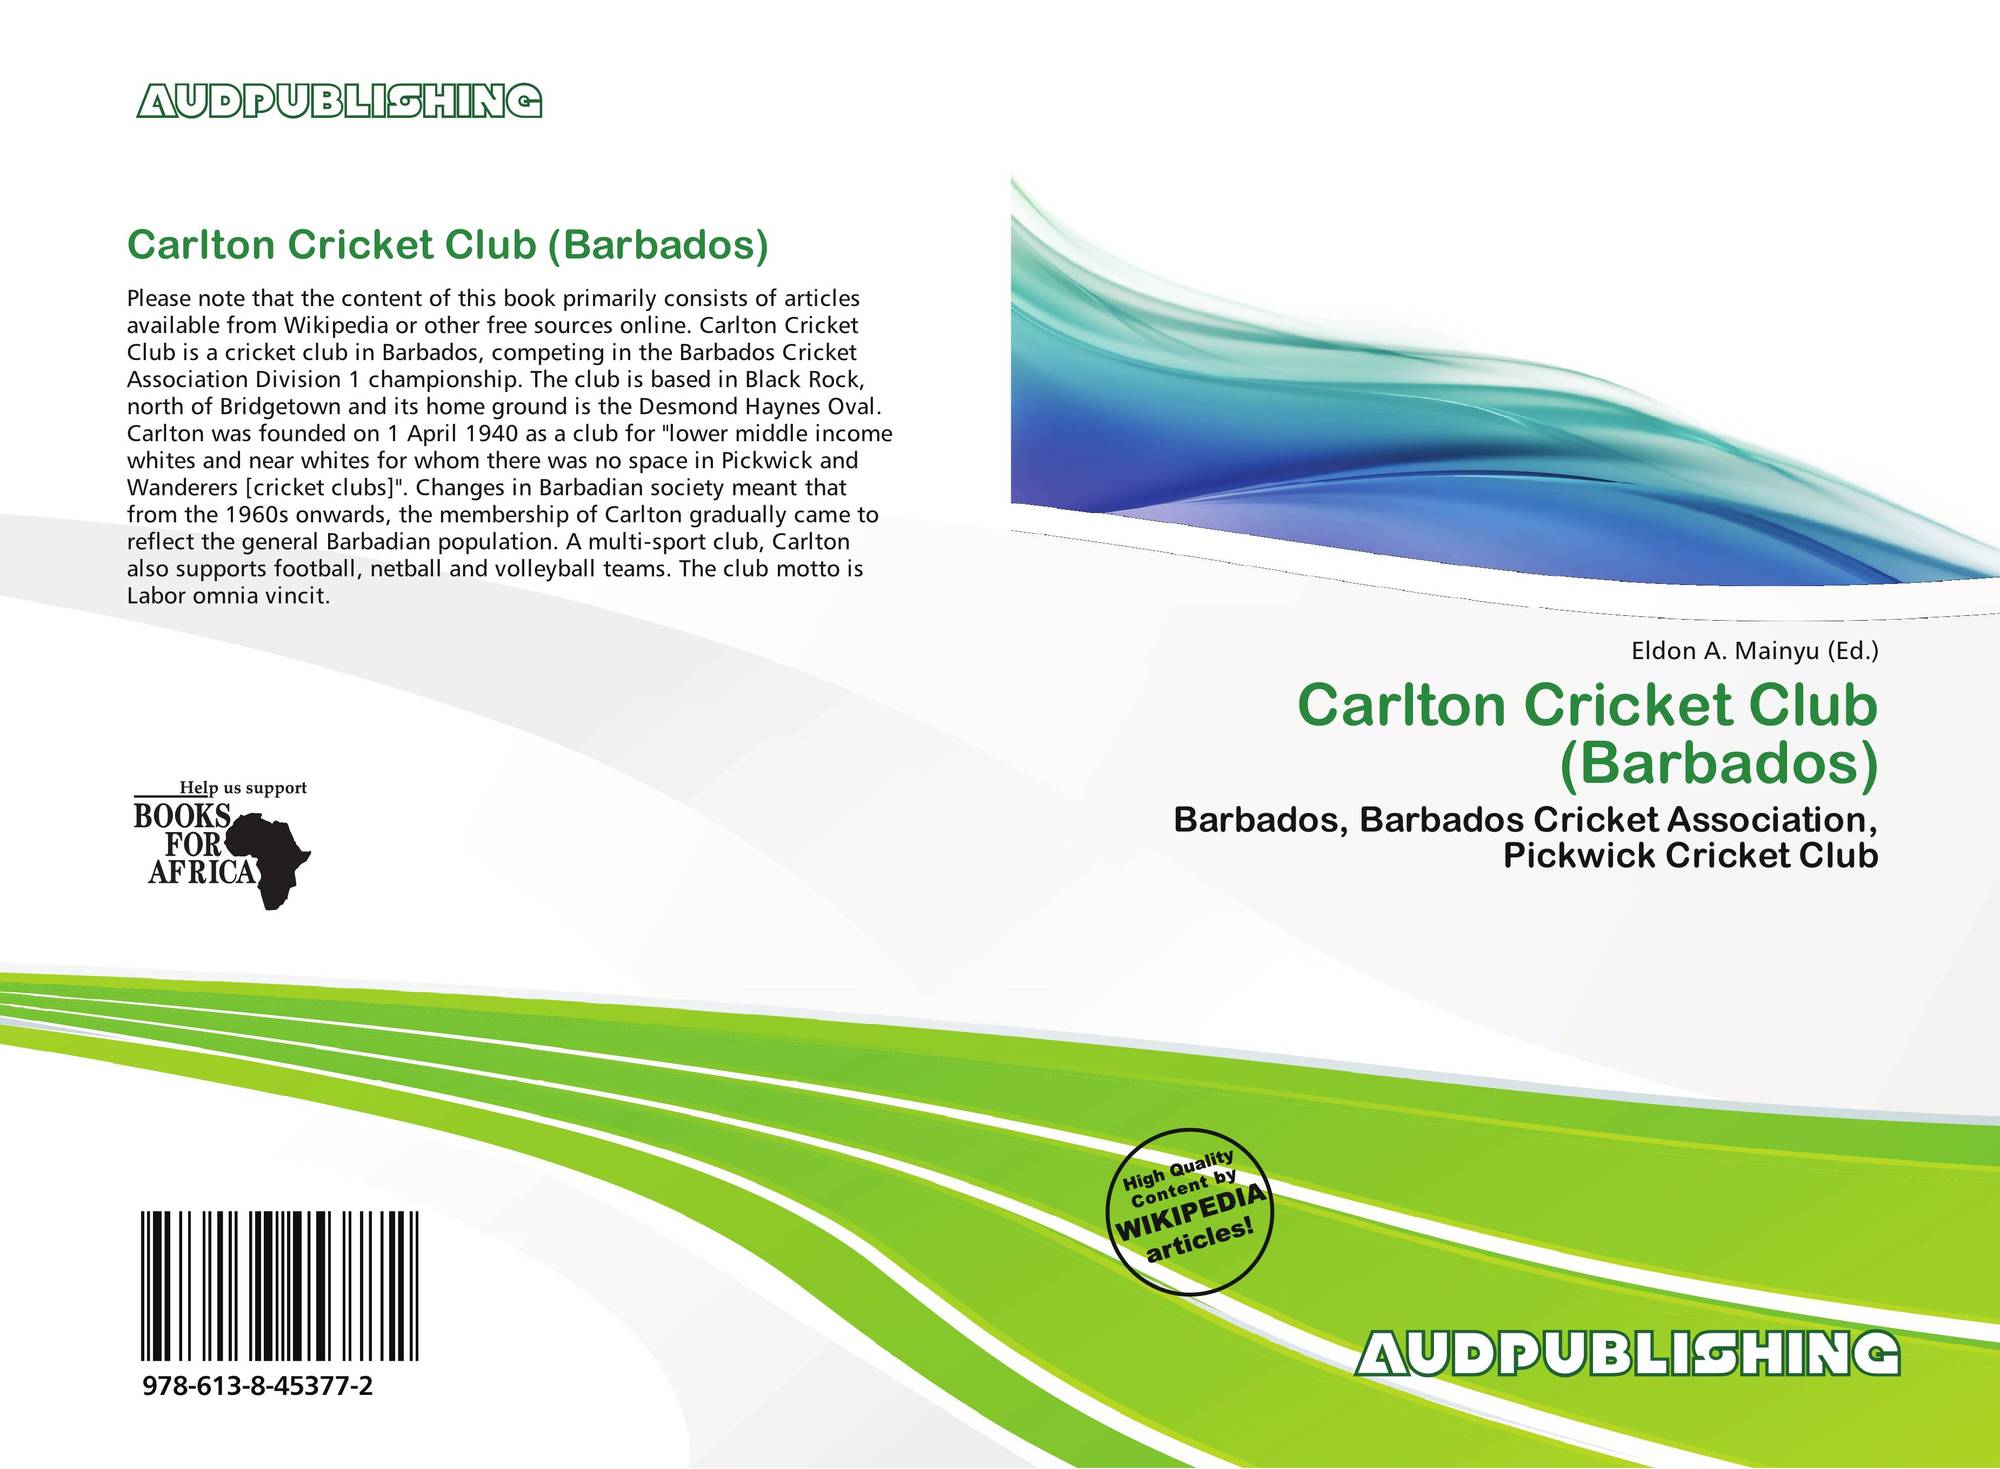 Barbados Cricket Association Logo - Carlton Cricket Club (Barbados), 978-613-8-45377-2, 6138453778 ...